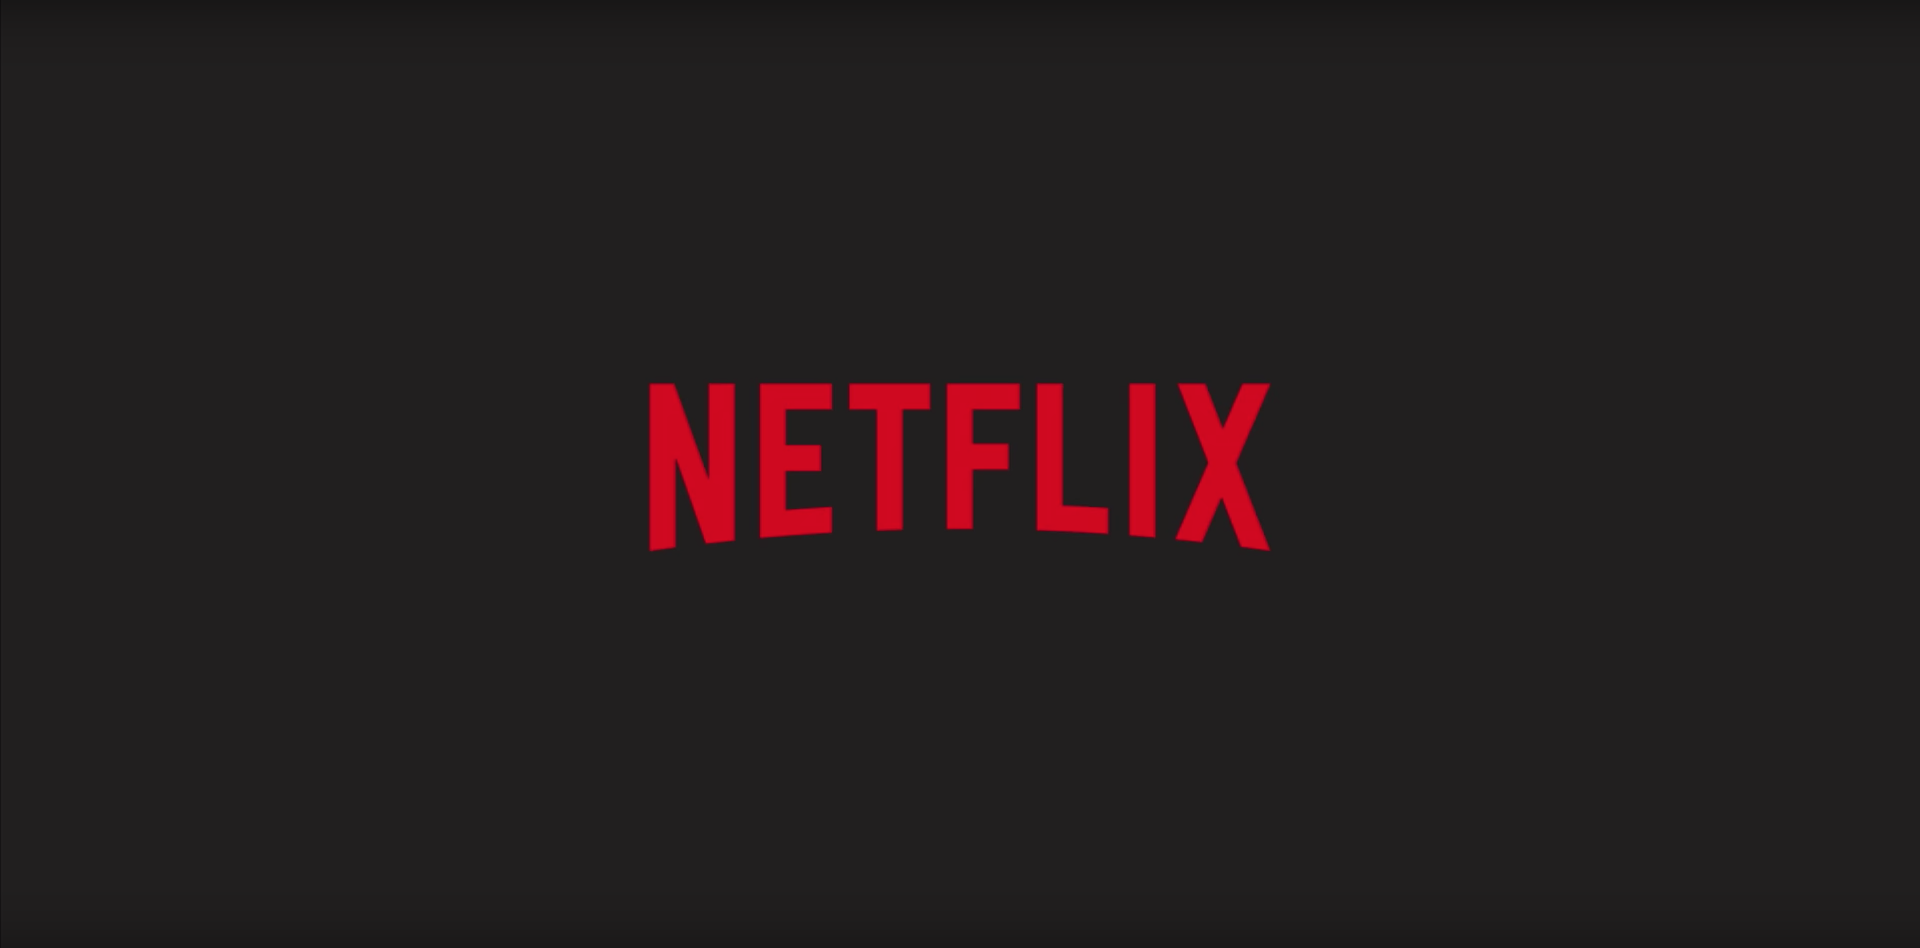 Netflix abunəçilərinin sayını açıqladı